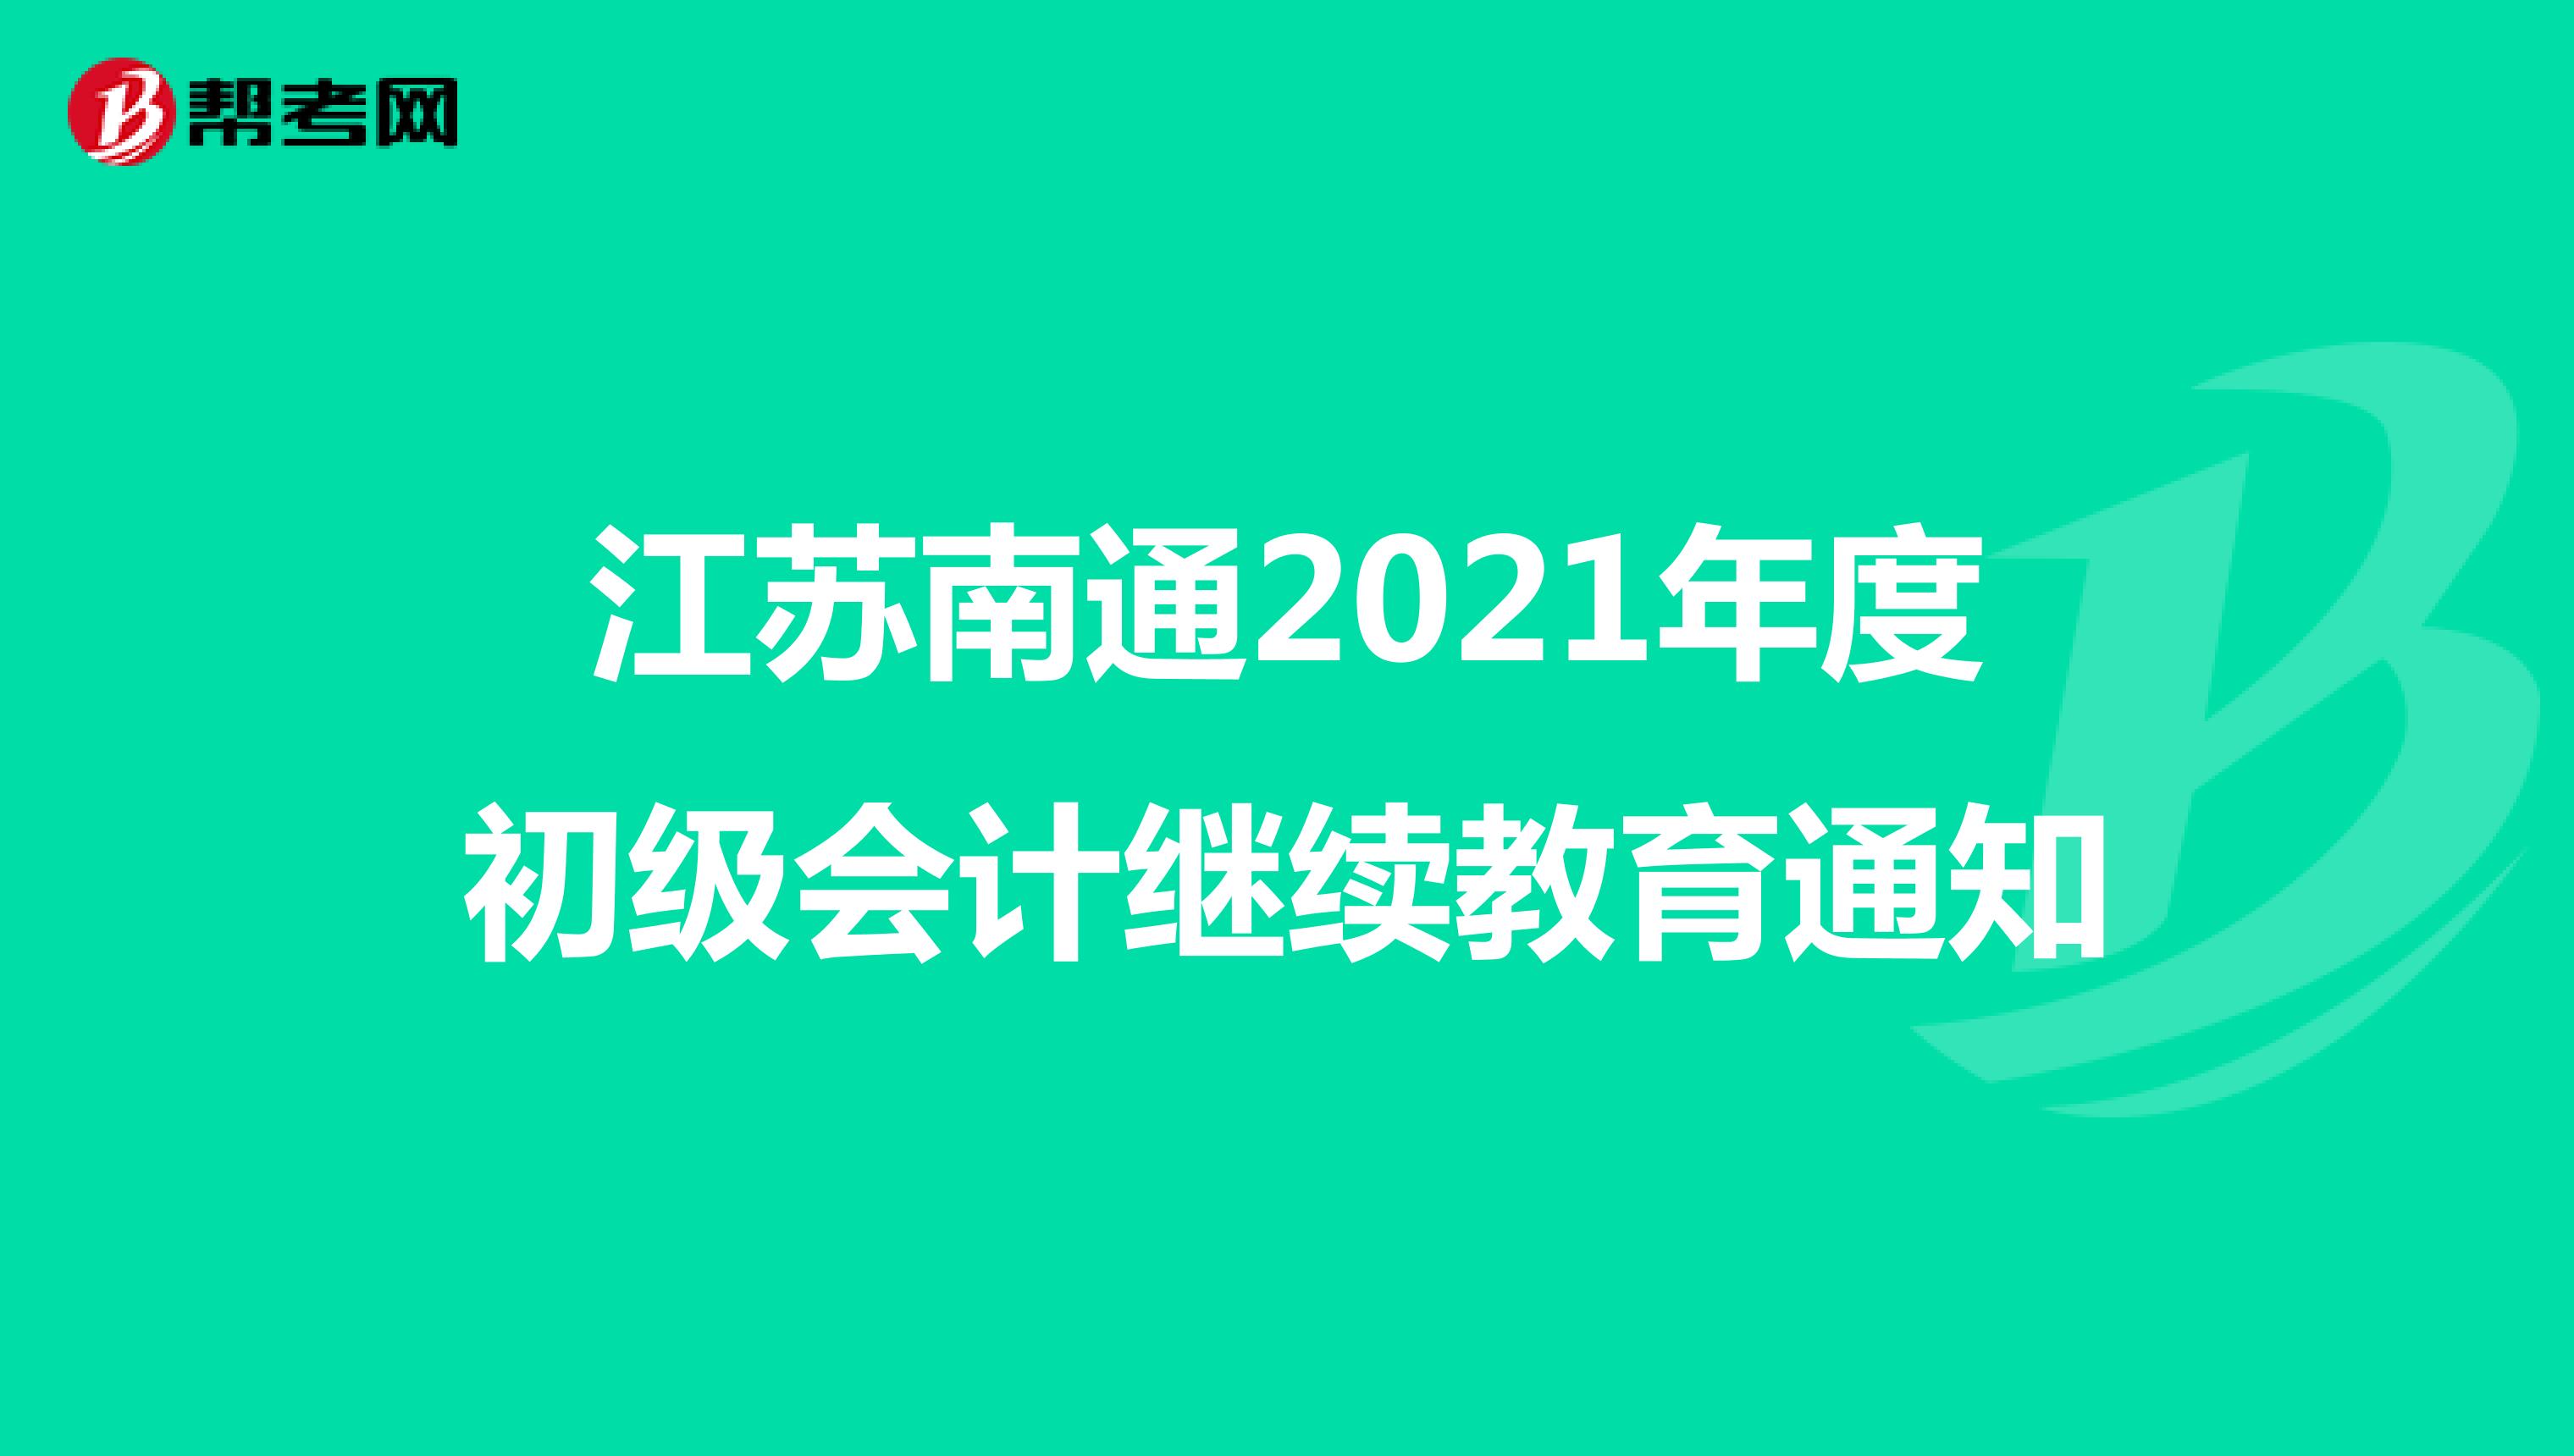 江苏南通2021年度初级会计继续教育通知